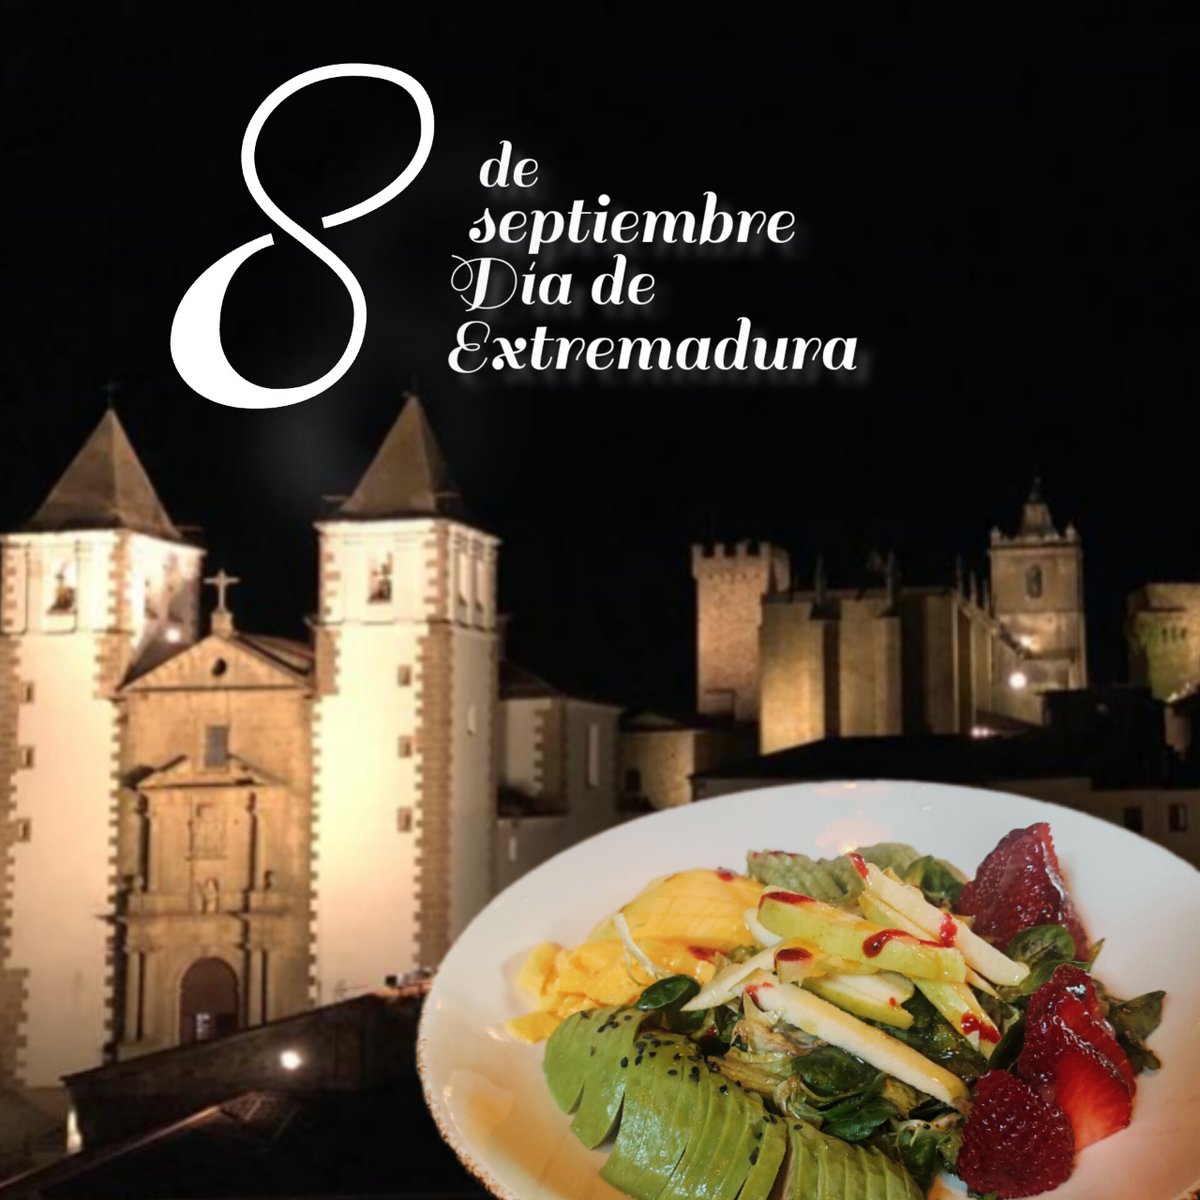 Feliz día de Extremadura

#restaurantenolasco  #caceres #extremadura #instafood #deliciososabor #cocinamediterranea #gastronomiaespañola #saborytradición #abriendoboca